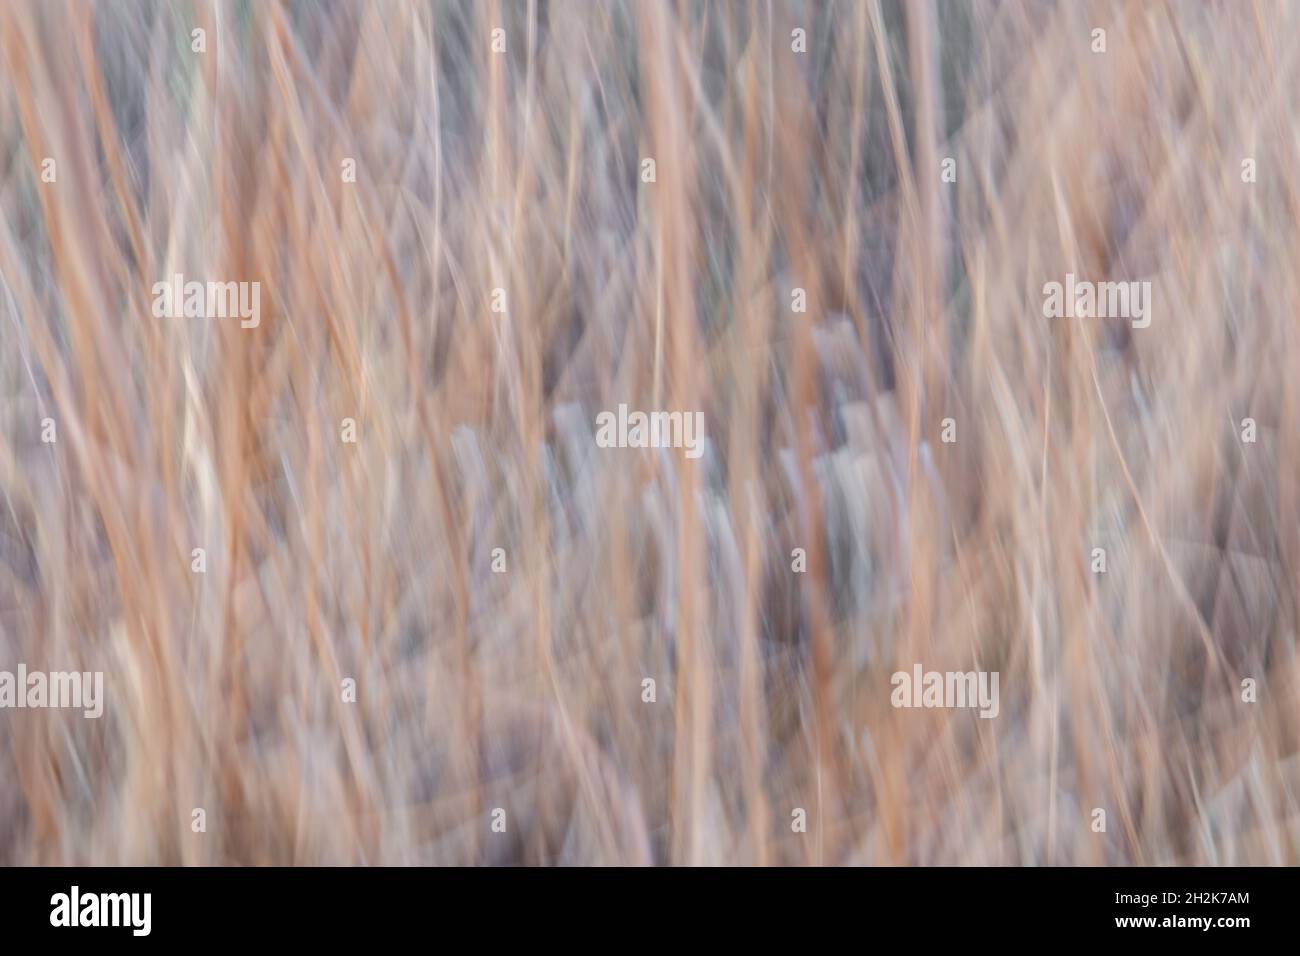 Schwenkendes Bild von getrocknetem Ziergras, das einen interessanten unscharfen Bewegungseffekt erzeugt Stockfoto